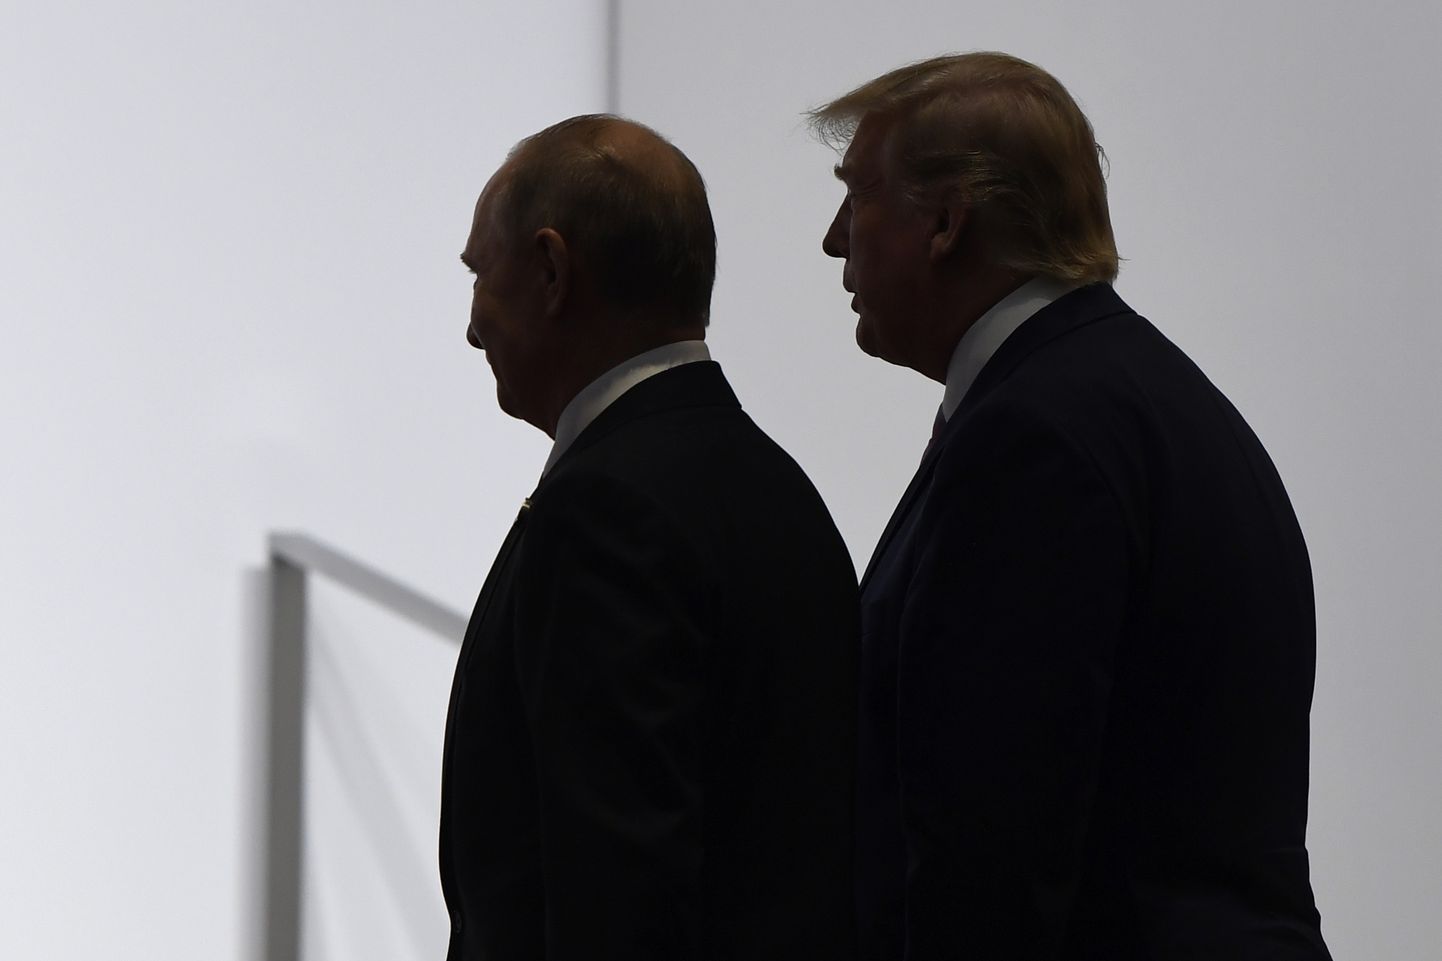 Venemaa president Vladimir Putin ja USA president Donald Trump Jaapanis Osakas G20 tippkohtumisel 28. juunil 2019.